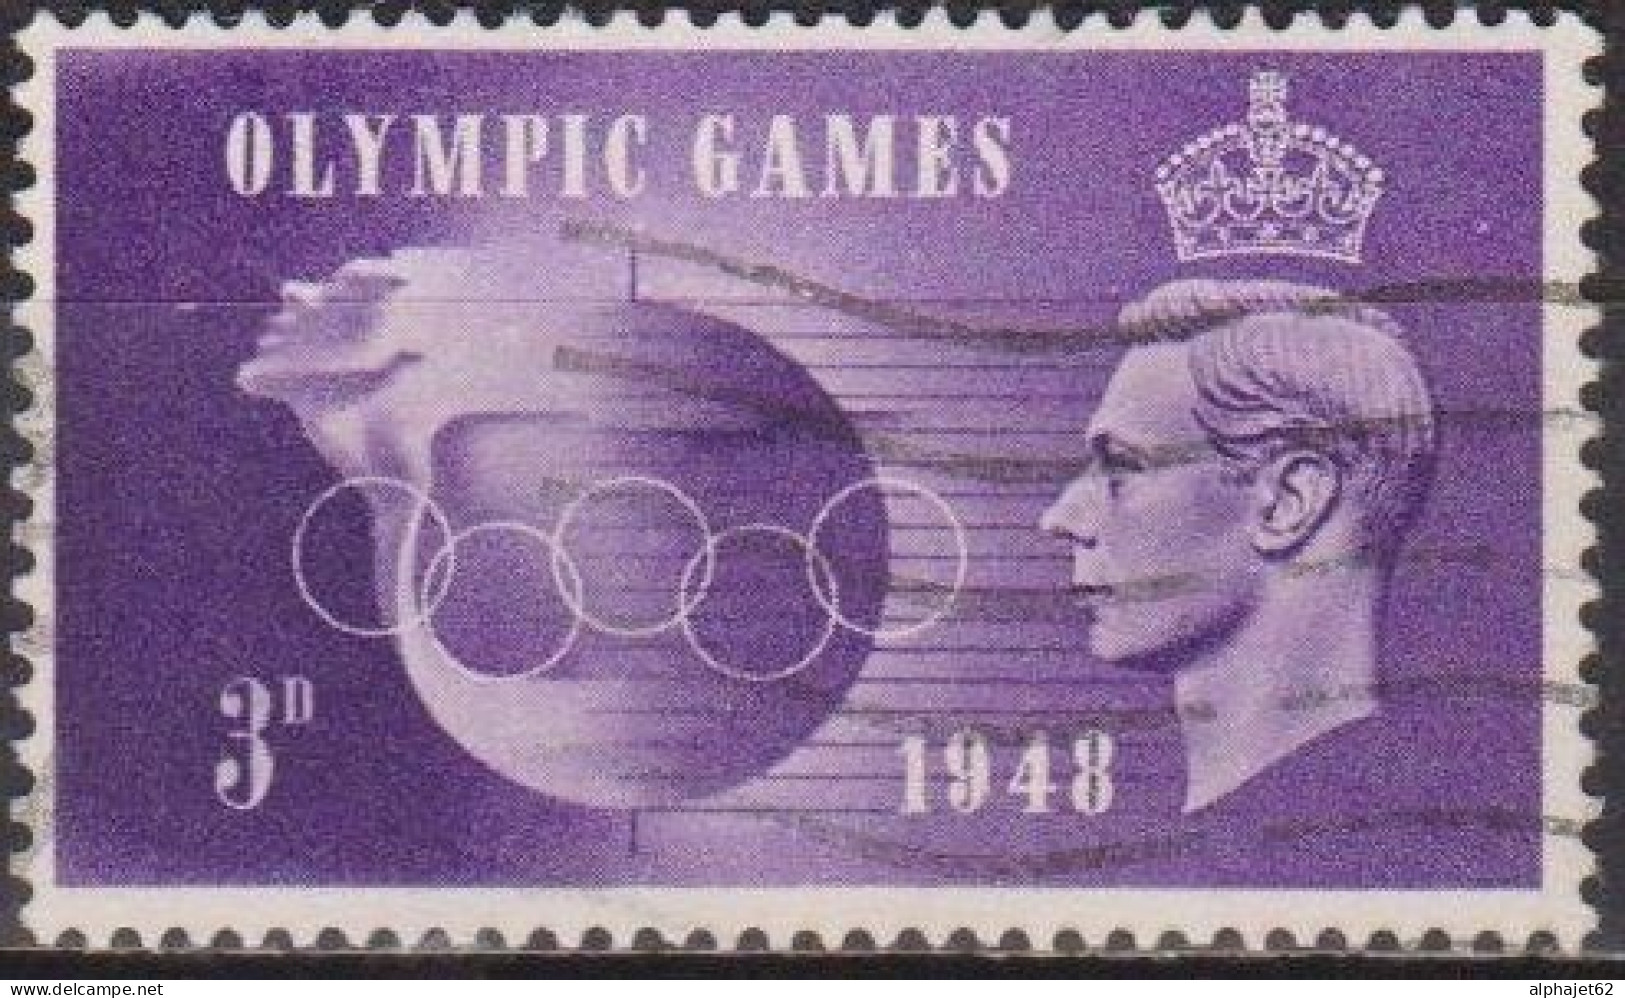 Jeux Olympiques De Londres - GRANDE BRETAGNE - Globe Et Anneaux - N° 242 - 1948 - Gebraucht